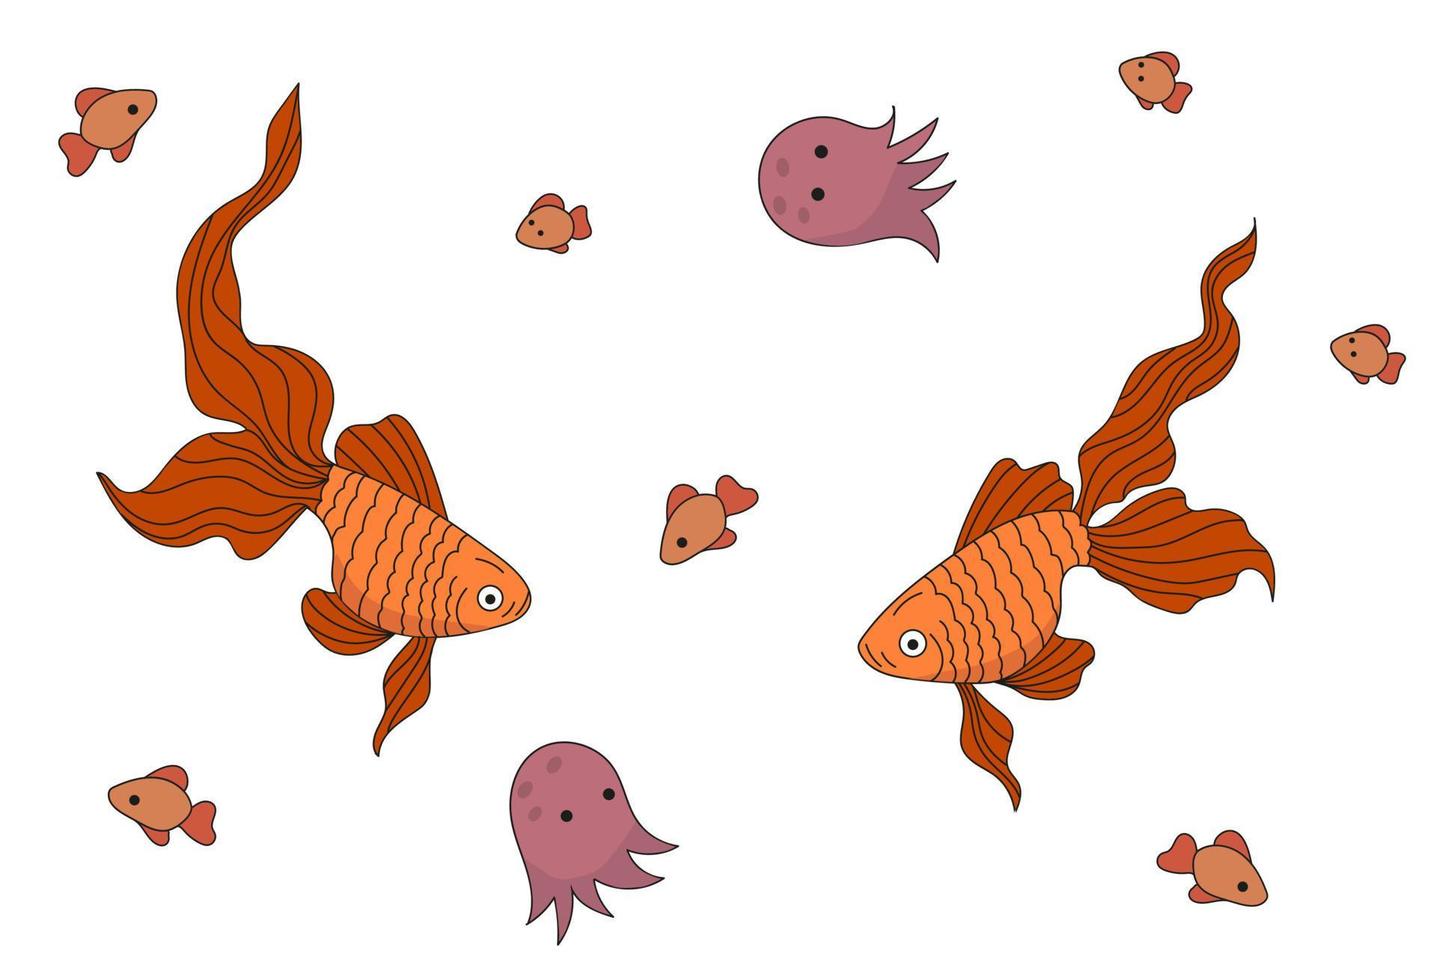 ilustração com habitantes marinhos. laranja dois peixes. medusas e peixes pequenos vetor